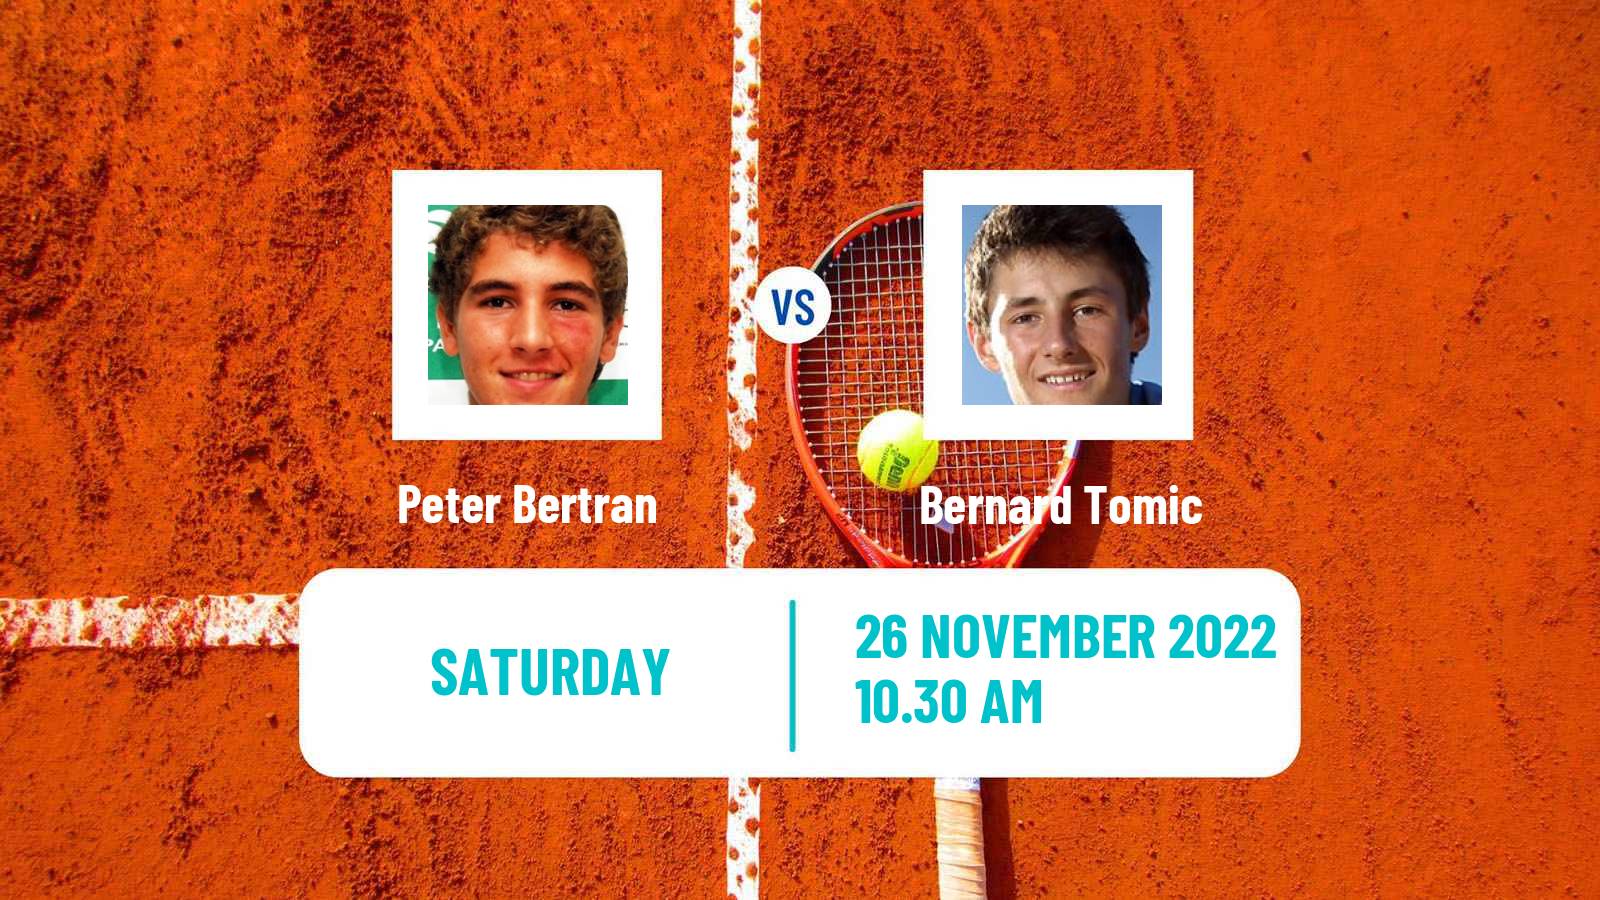 Tennis ITF Tournaments Peter Bertran - Bernard Tomic